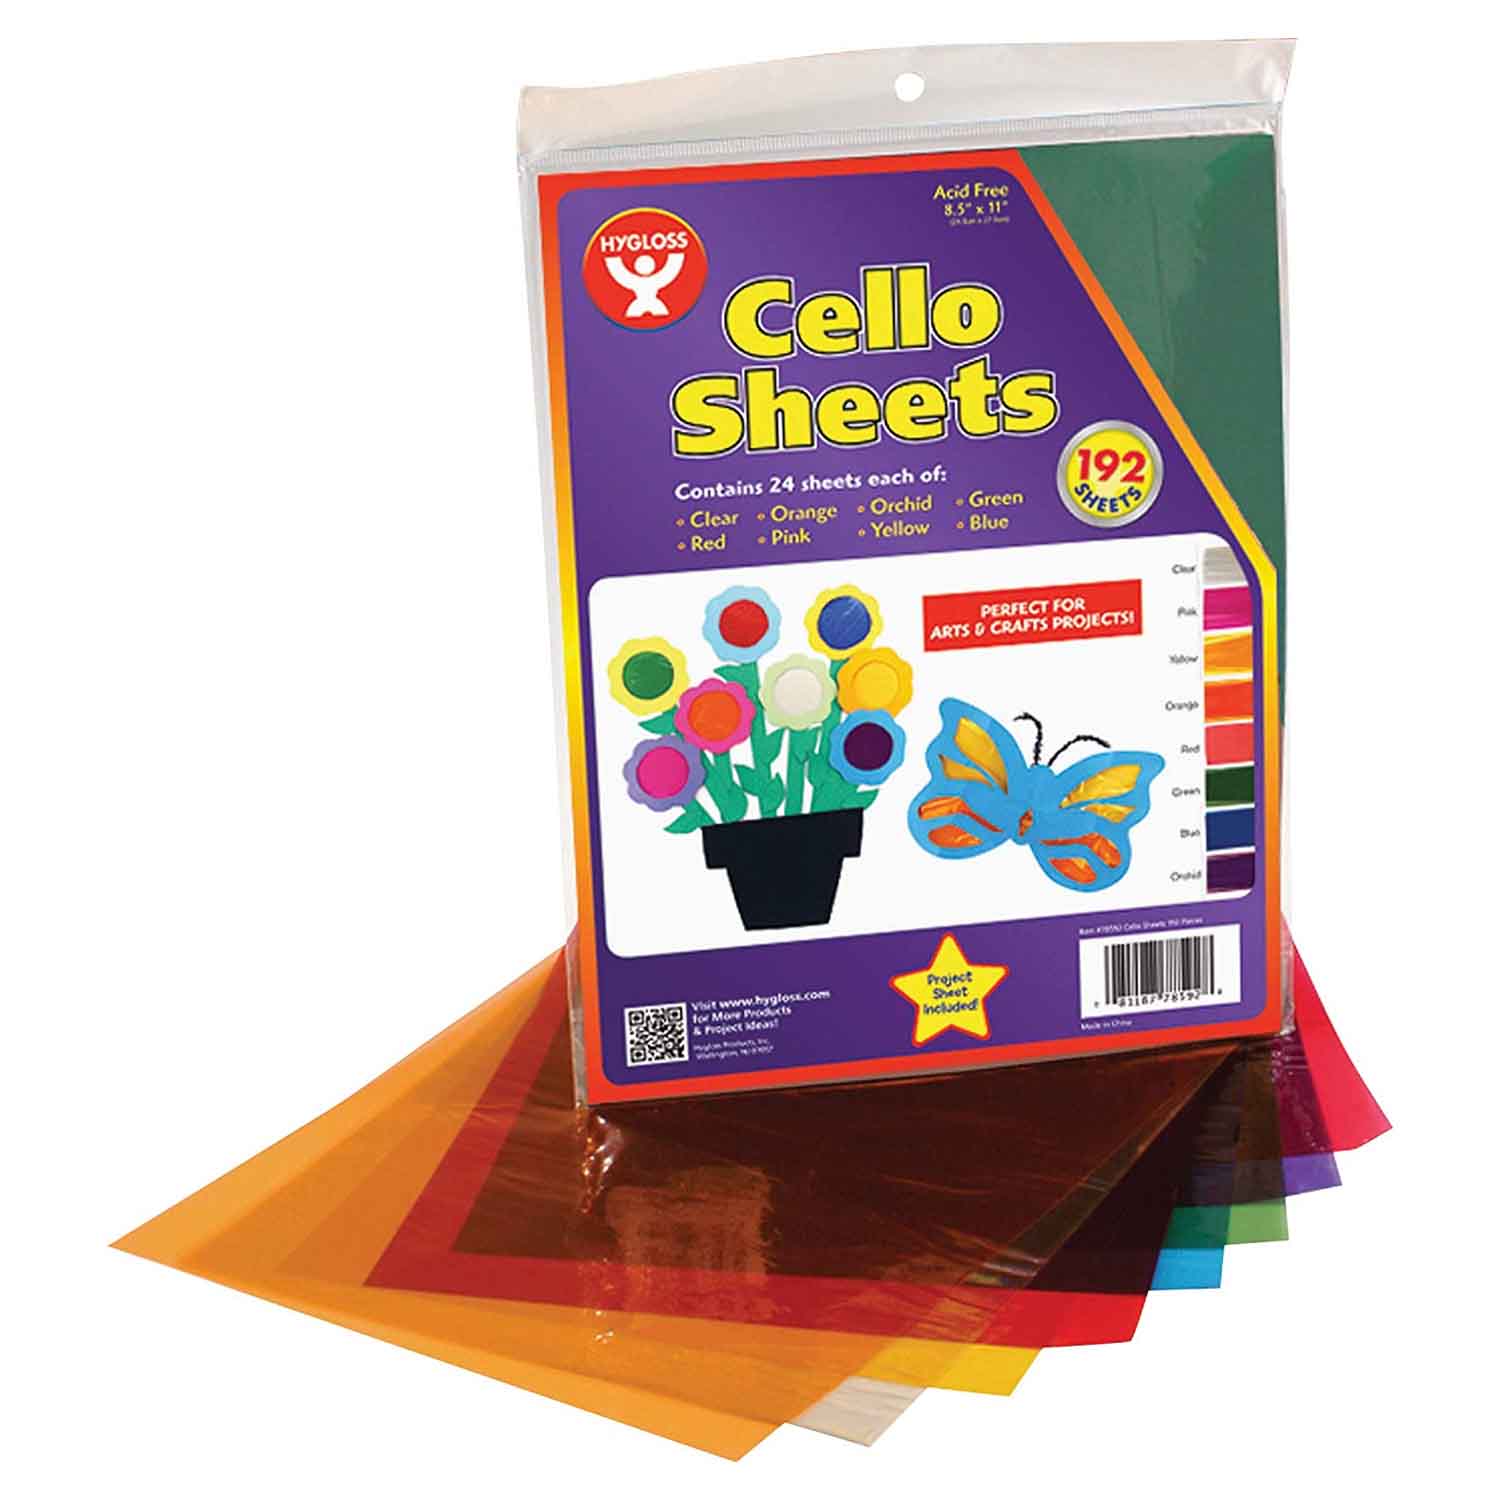 Cellophane Sheets